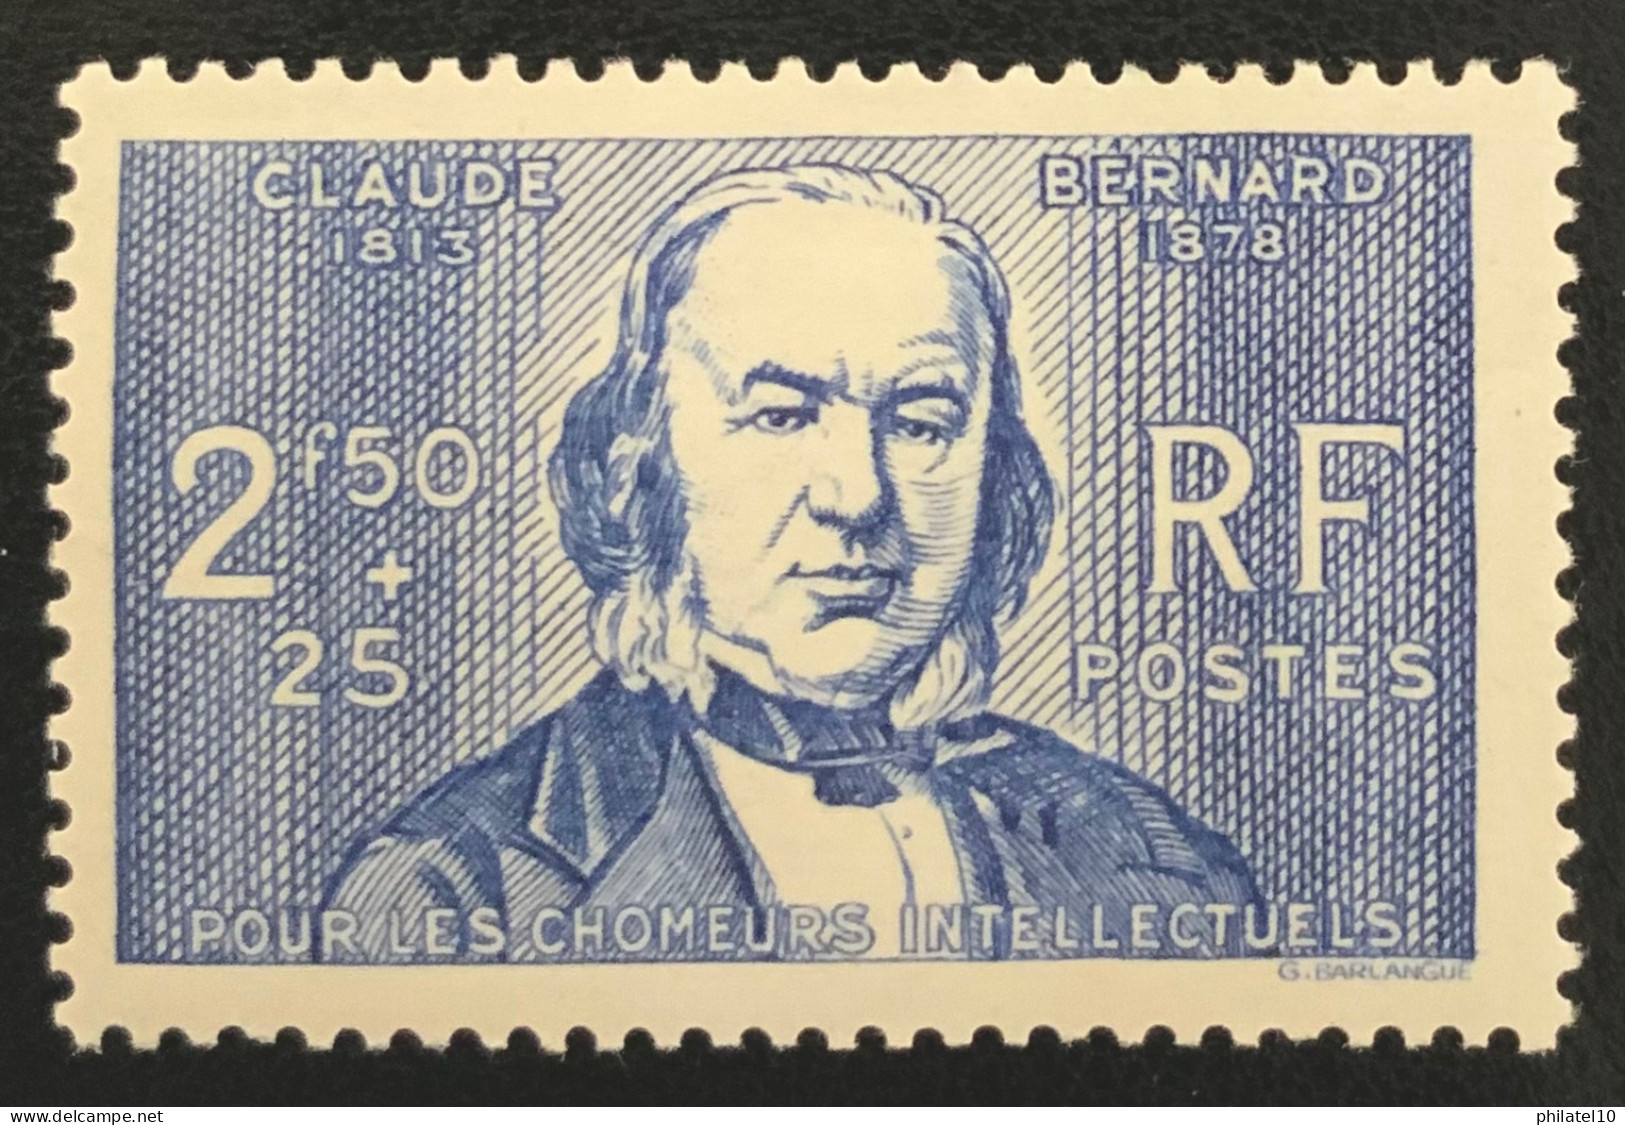 1940 FRANCE N 464 CLAUDE BERNARD - POUR LES CHÔMEURS INTELLECTUELS - NEUF** - Unused Stamps